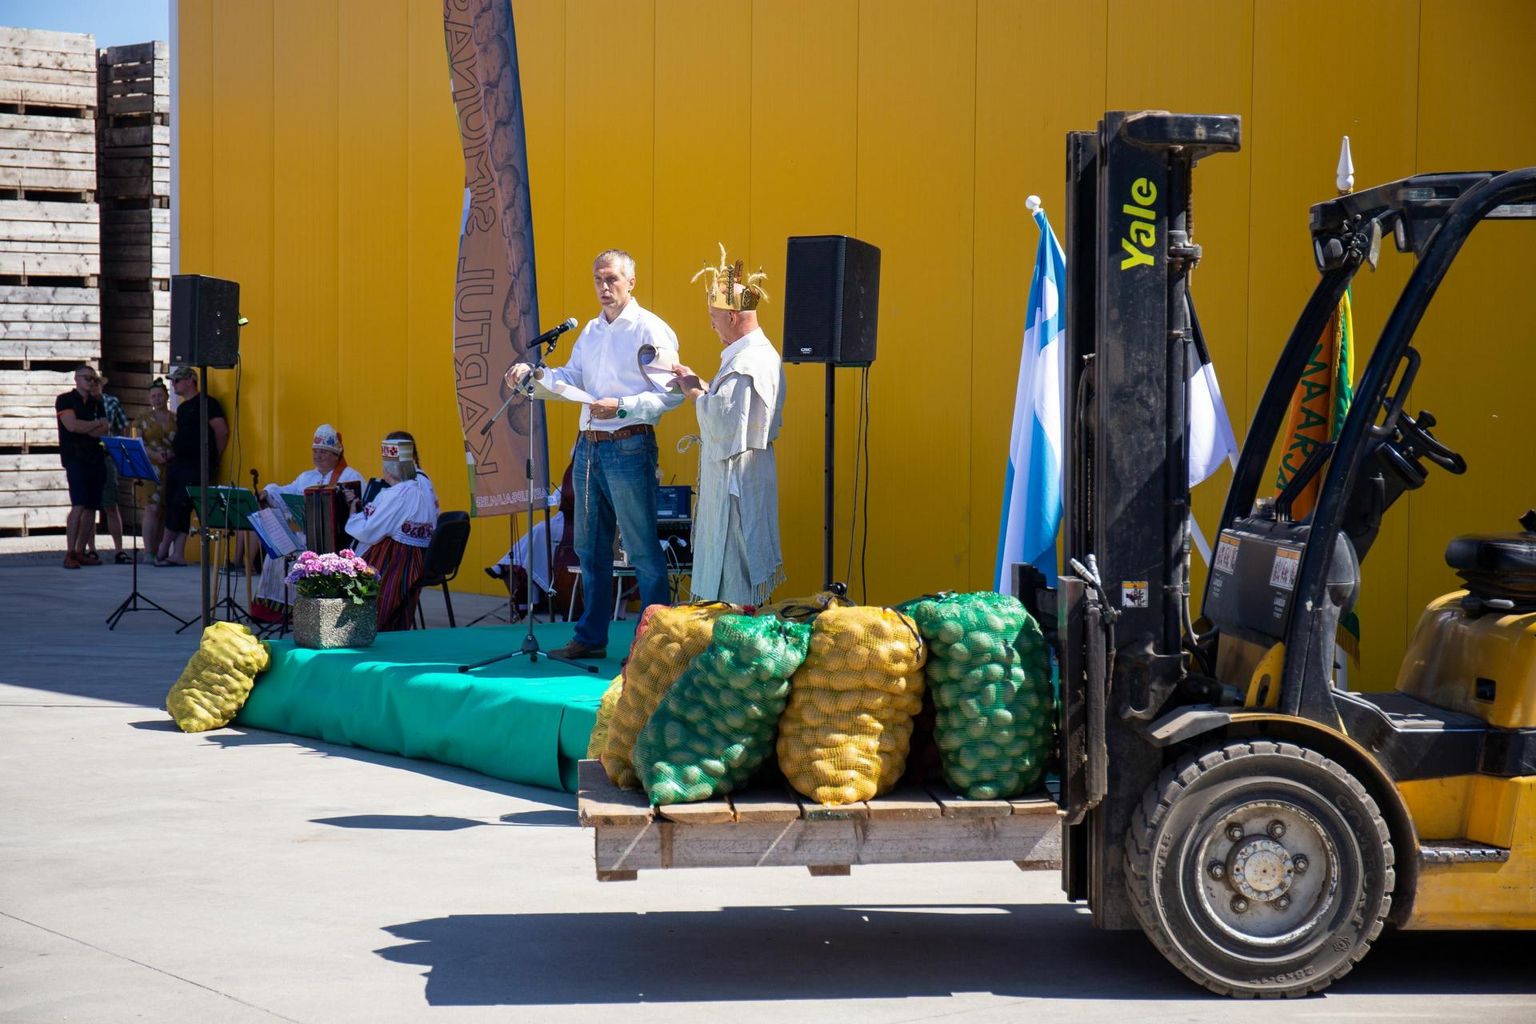 Kaks aastat tagasi kuulutati avatud talude päev avatuks kartulipealinnas Simunas perekond Põldmaa kartulikasvatusettevõttes. Tänavu on avaüritus Viljandi maakonnas Pajumäe talus.